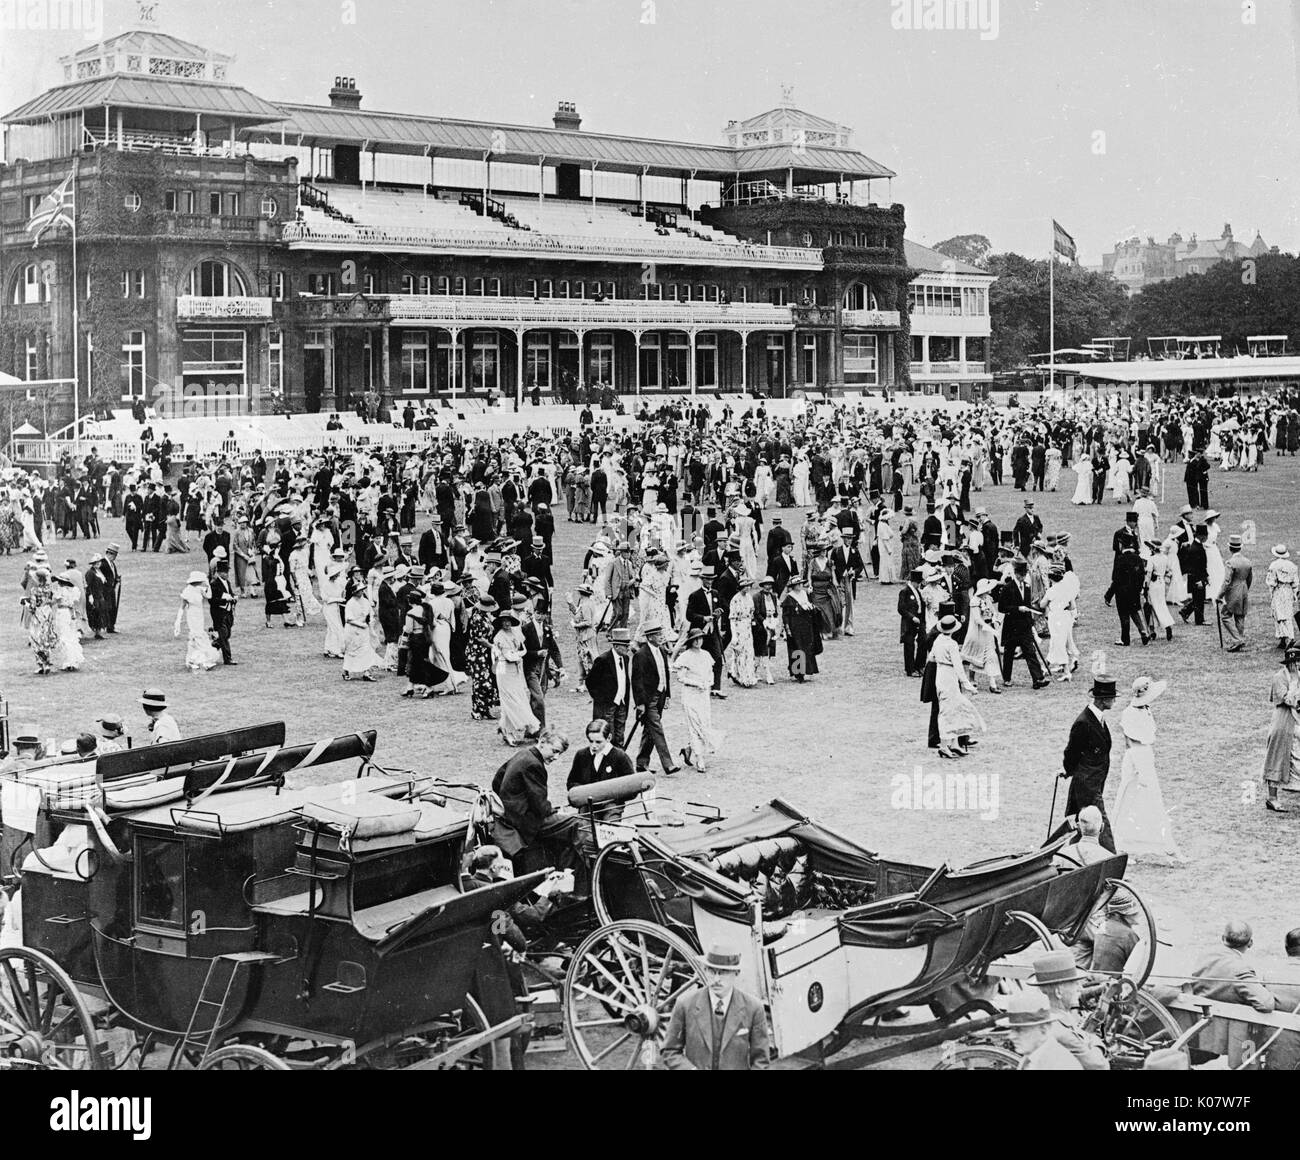 La scena durante l annuale Eton v Harrow partita di cricket al Lords Cricket Ground in NW Londra, 13 luglio 1934. Mostra persone che passeggiano circa durante l'intervallo di pranzo, con carrelli tradizionali in primo piano. La partita di per sé era un pareggio. Data: 1934 Foto Stock